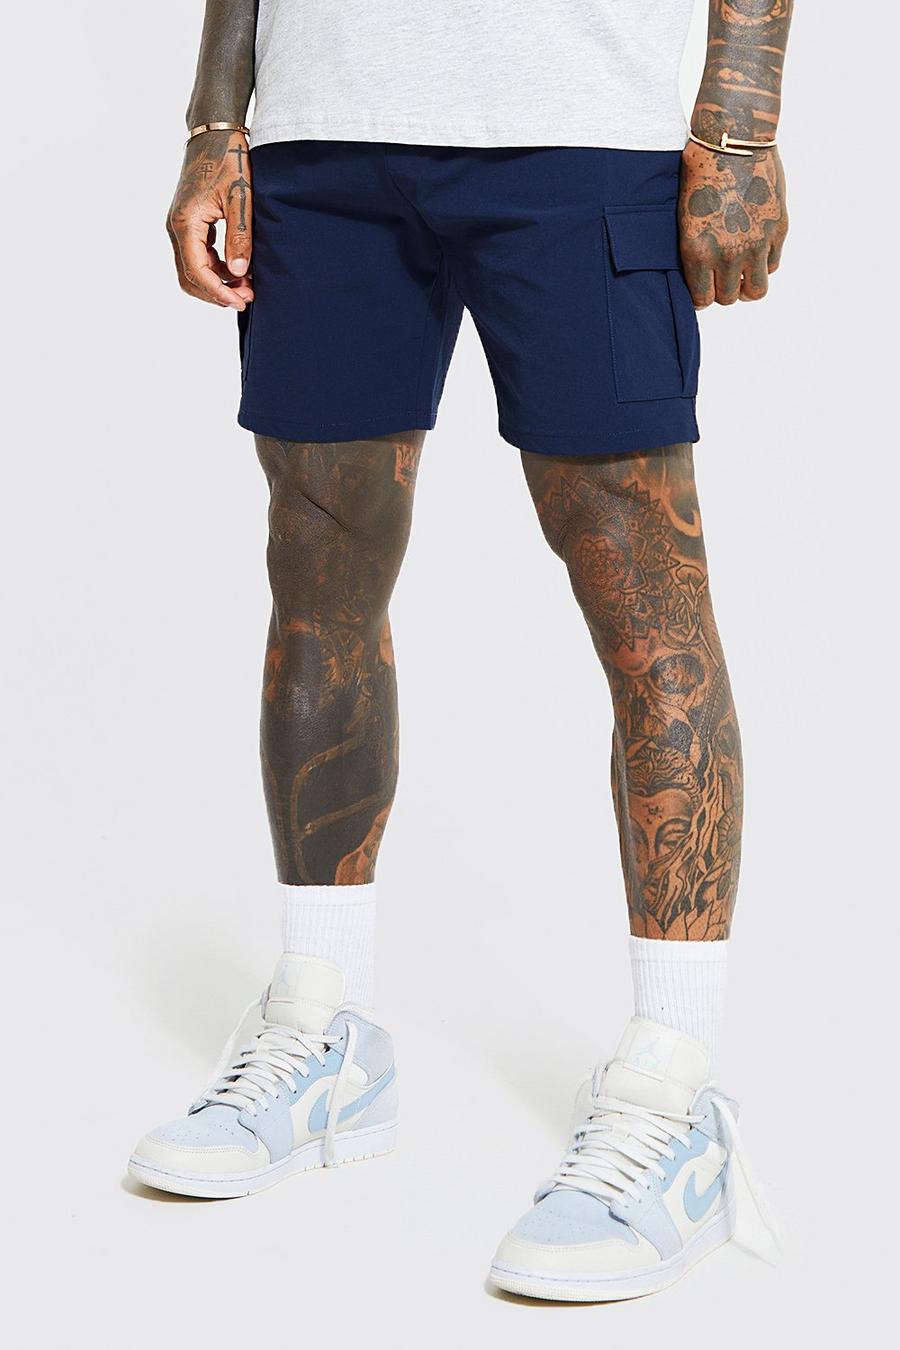 Pantaloncini Chino Slim Fit elasticizzati in vita, Navy azul marino